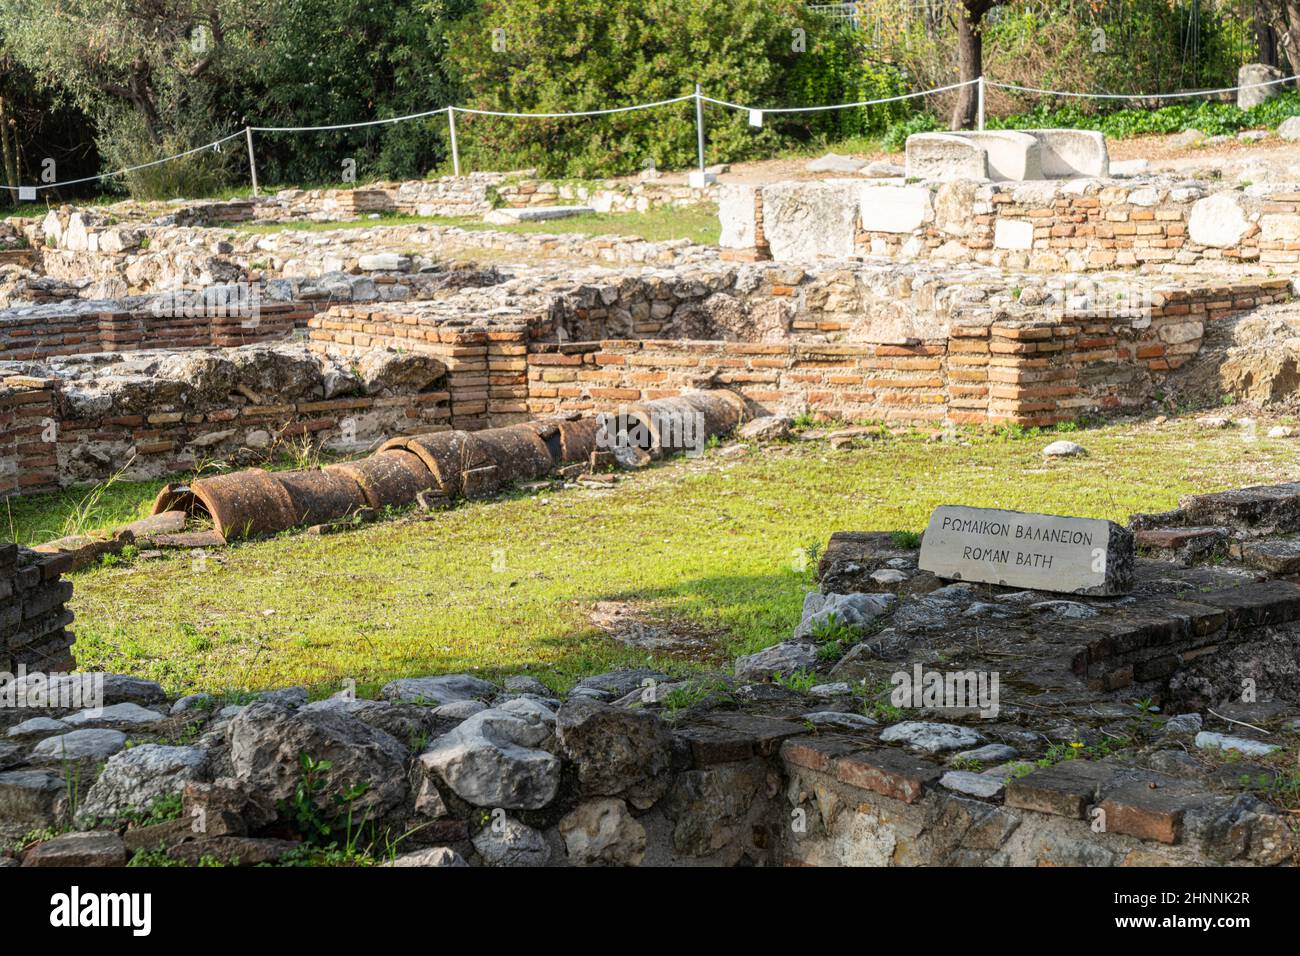 Tempel des Olympischen Zeus in Athen, Griechenland Stockfoto